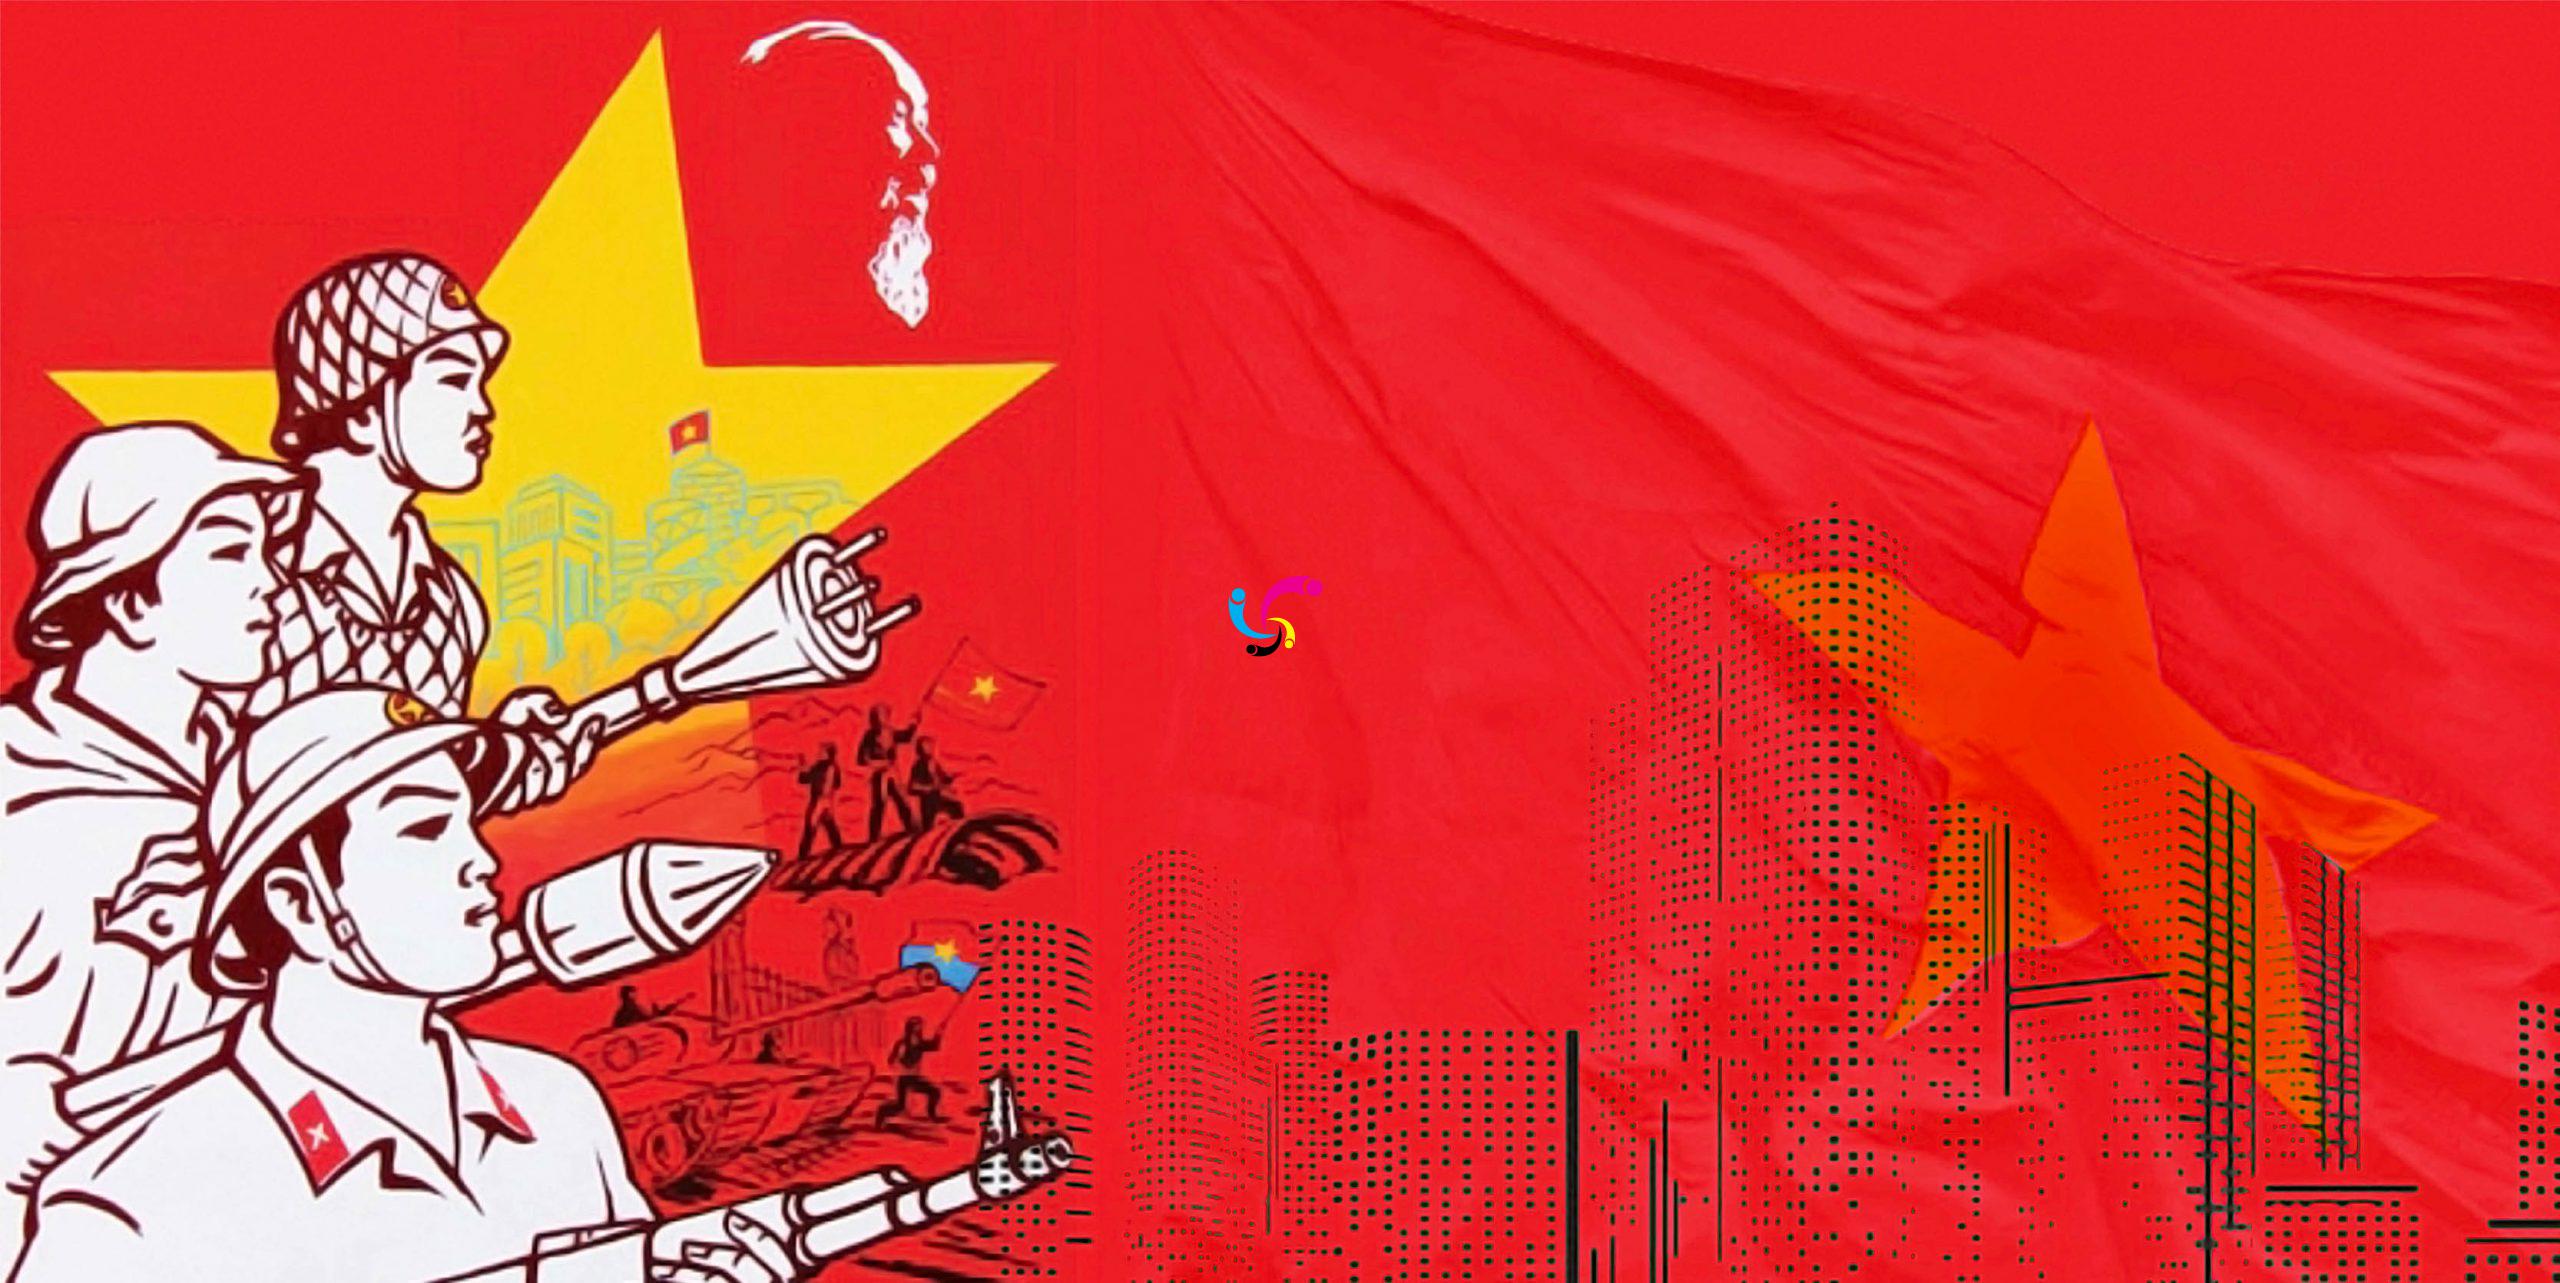 Mẫu cờ đỏ sao vàng: Với những mẫu cờ đỏ sao vàng đa dạng, phong phú, bạn sẽ chắc chắn tìm được cho mình một thiết kế cờ ưng ý nhất. Đến với trang web của chúng tôi để tìm kiếm và khám phá những mẫu cờ đẹp nhất Việt Nam.